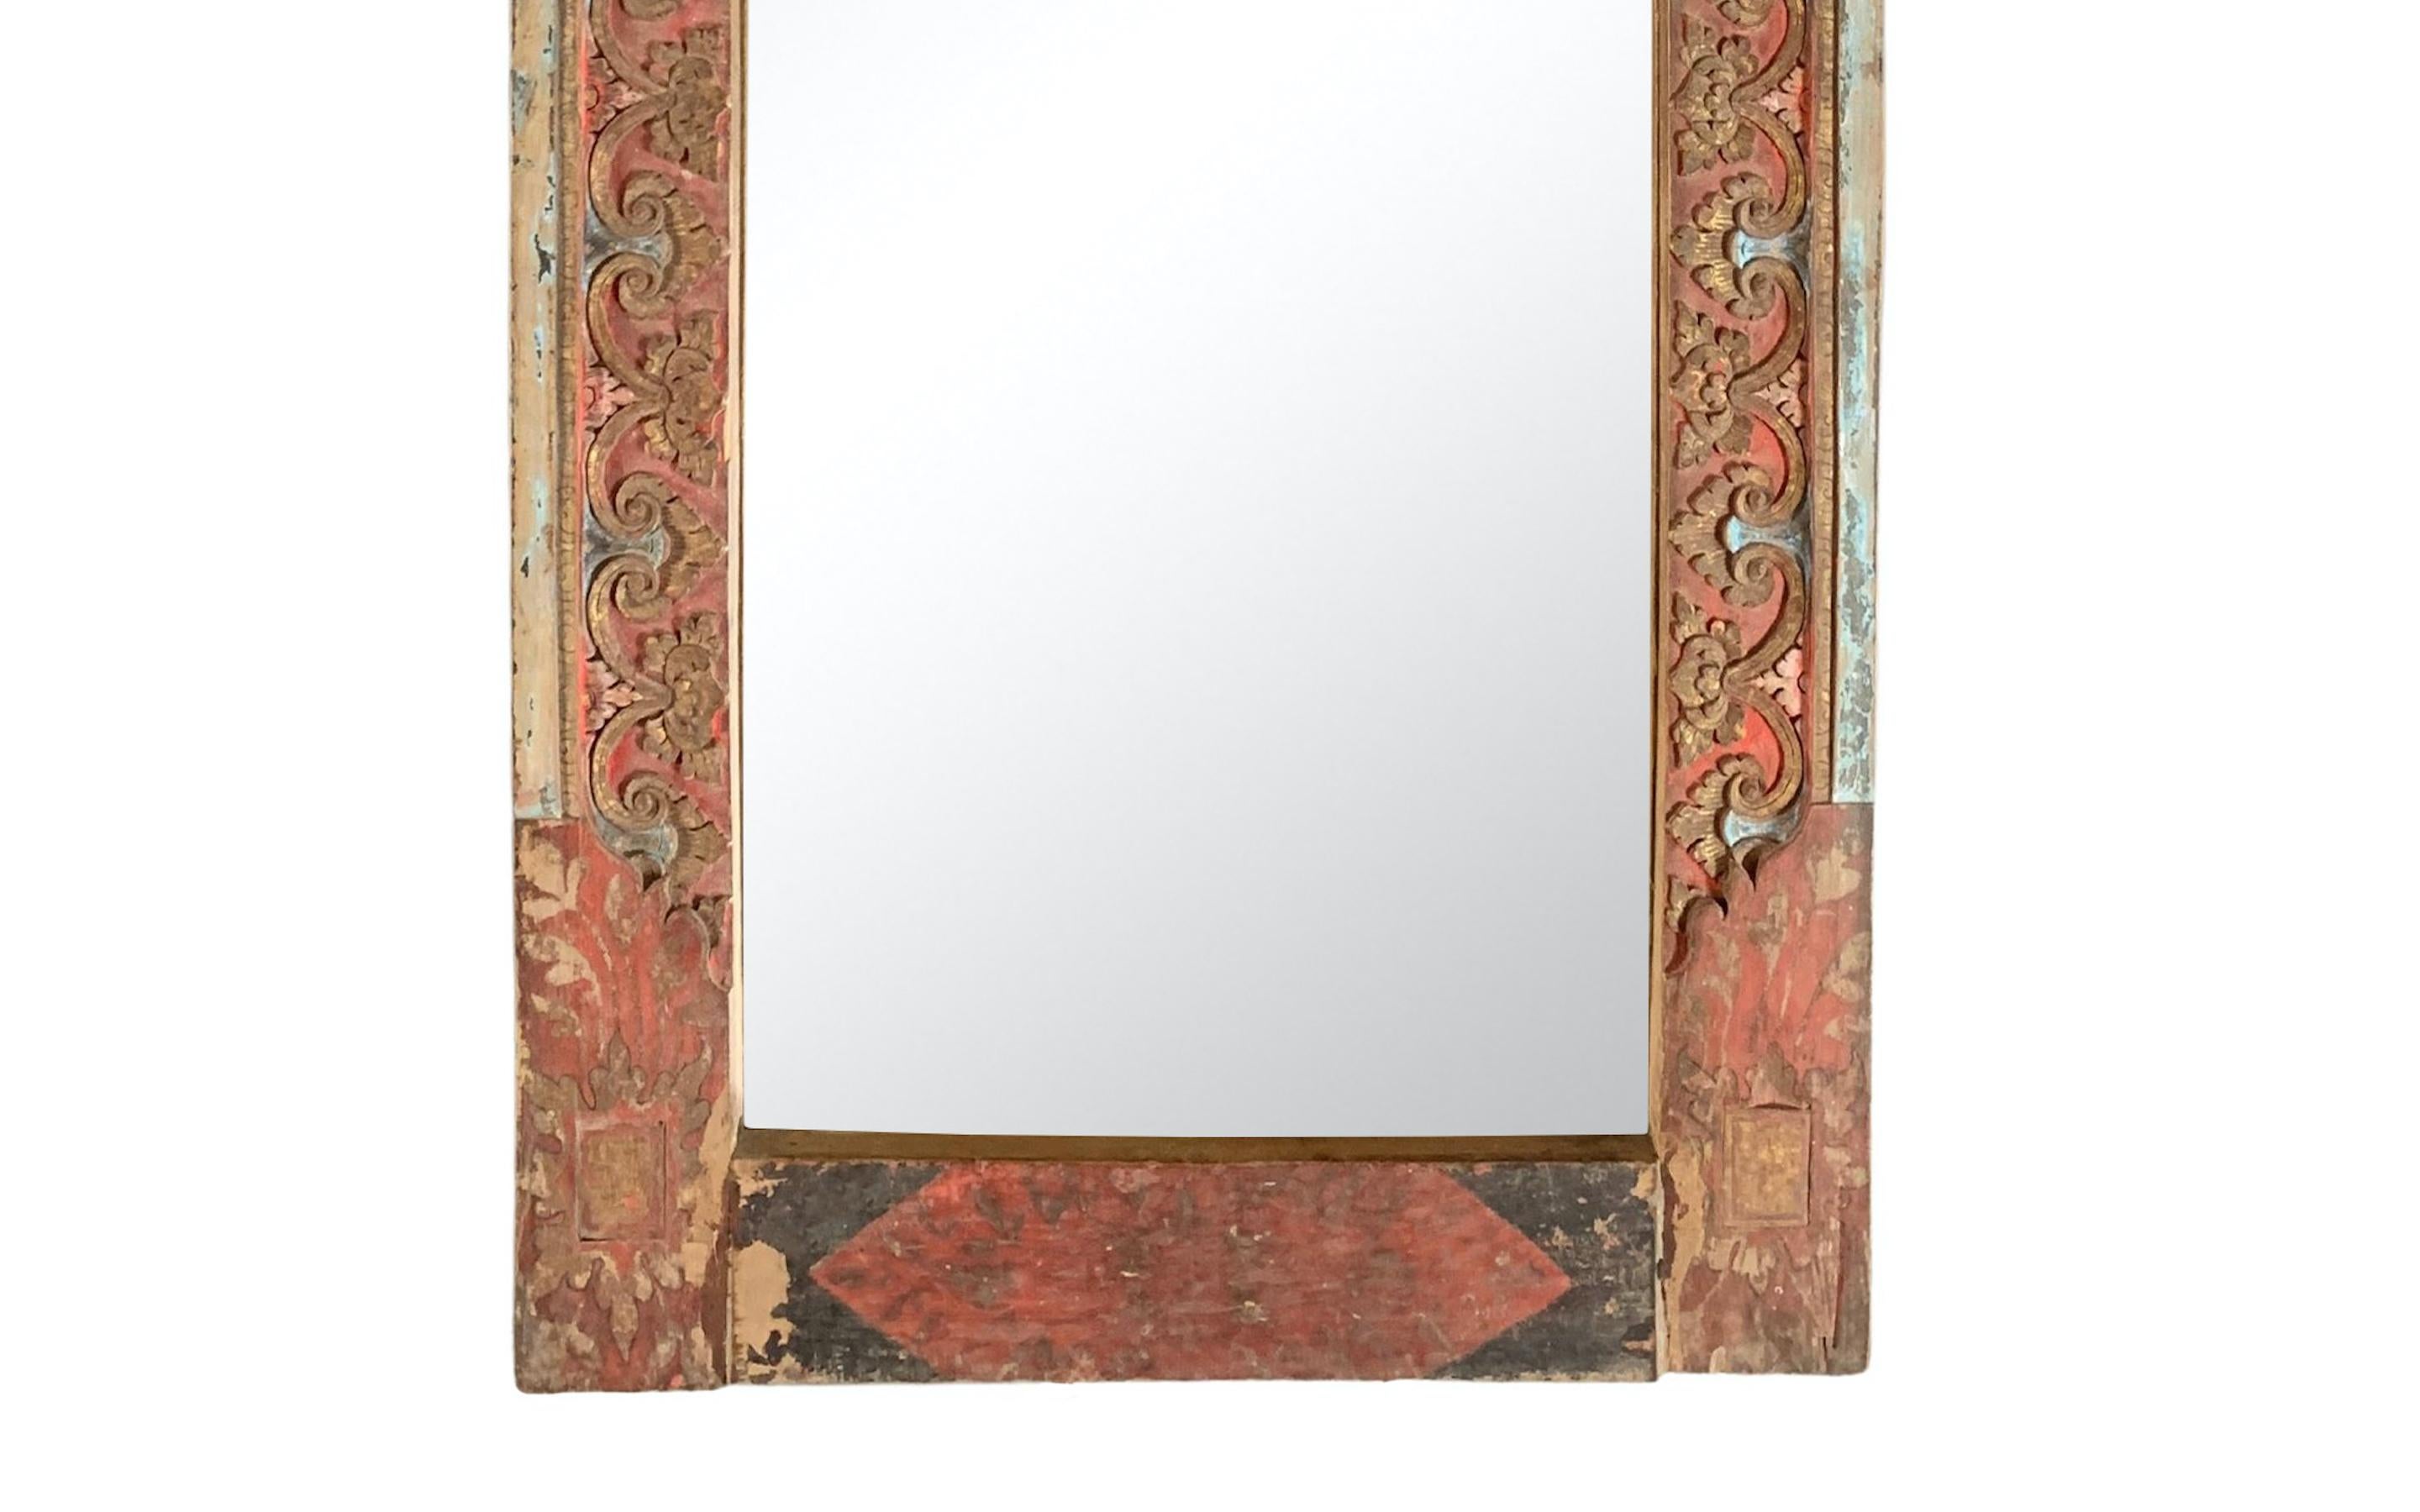 Dieser Spiegel wurde um die Mitte des 20. Jahrhunderts auf der Insel Bali gefertigt und zeichnet sich durch wunderbare Balinesische geschnitzte Details und eine polychrome Oberfläche in Rot, Schwarz und Gold aus. An der Rückseite des Spiegels ist